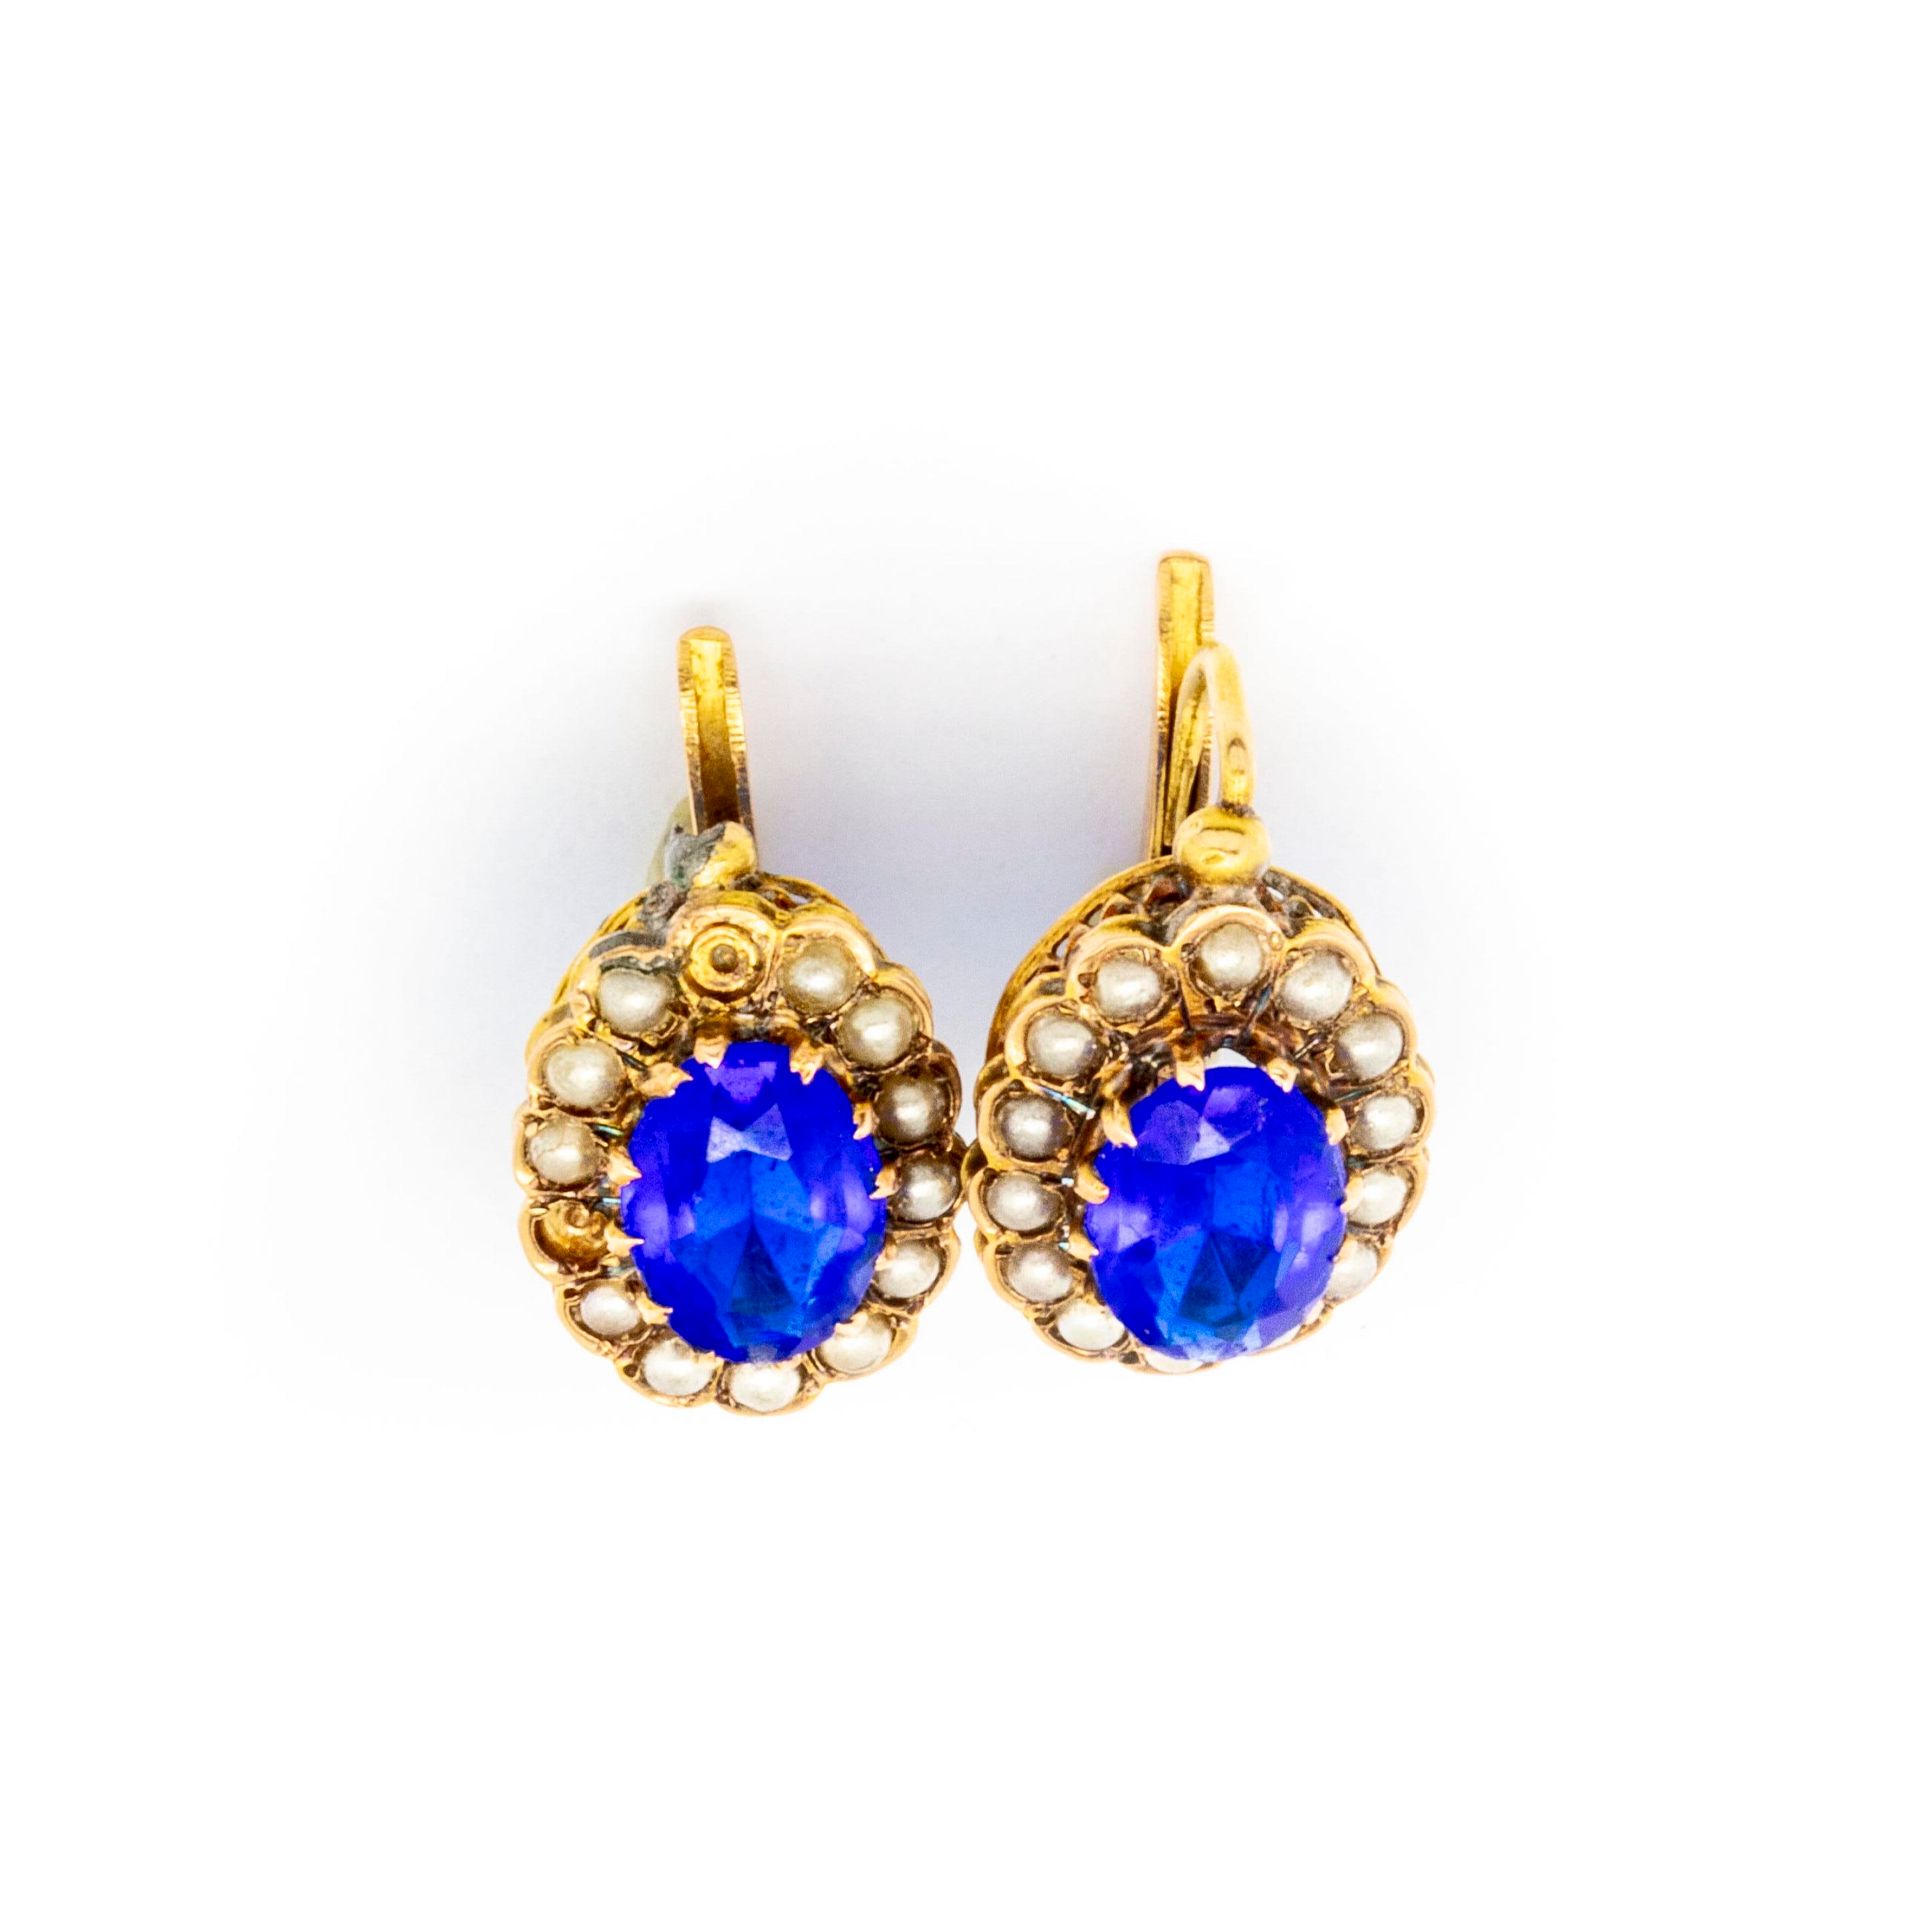 Null 黄金和珍珠耳环配蓝色宝石

毛重：2.1克。

事故